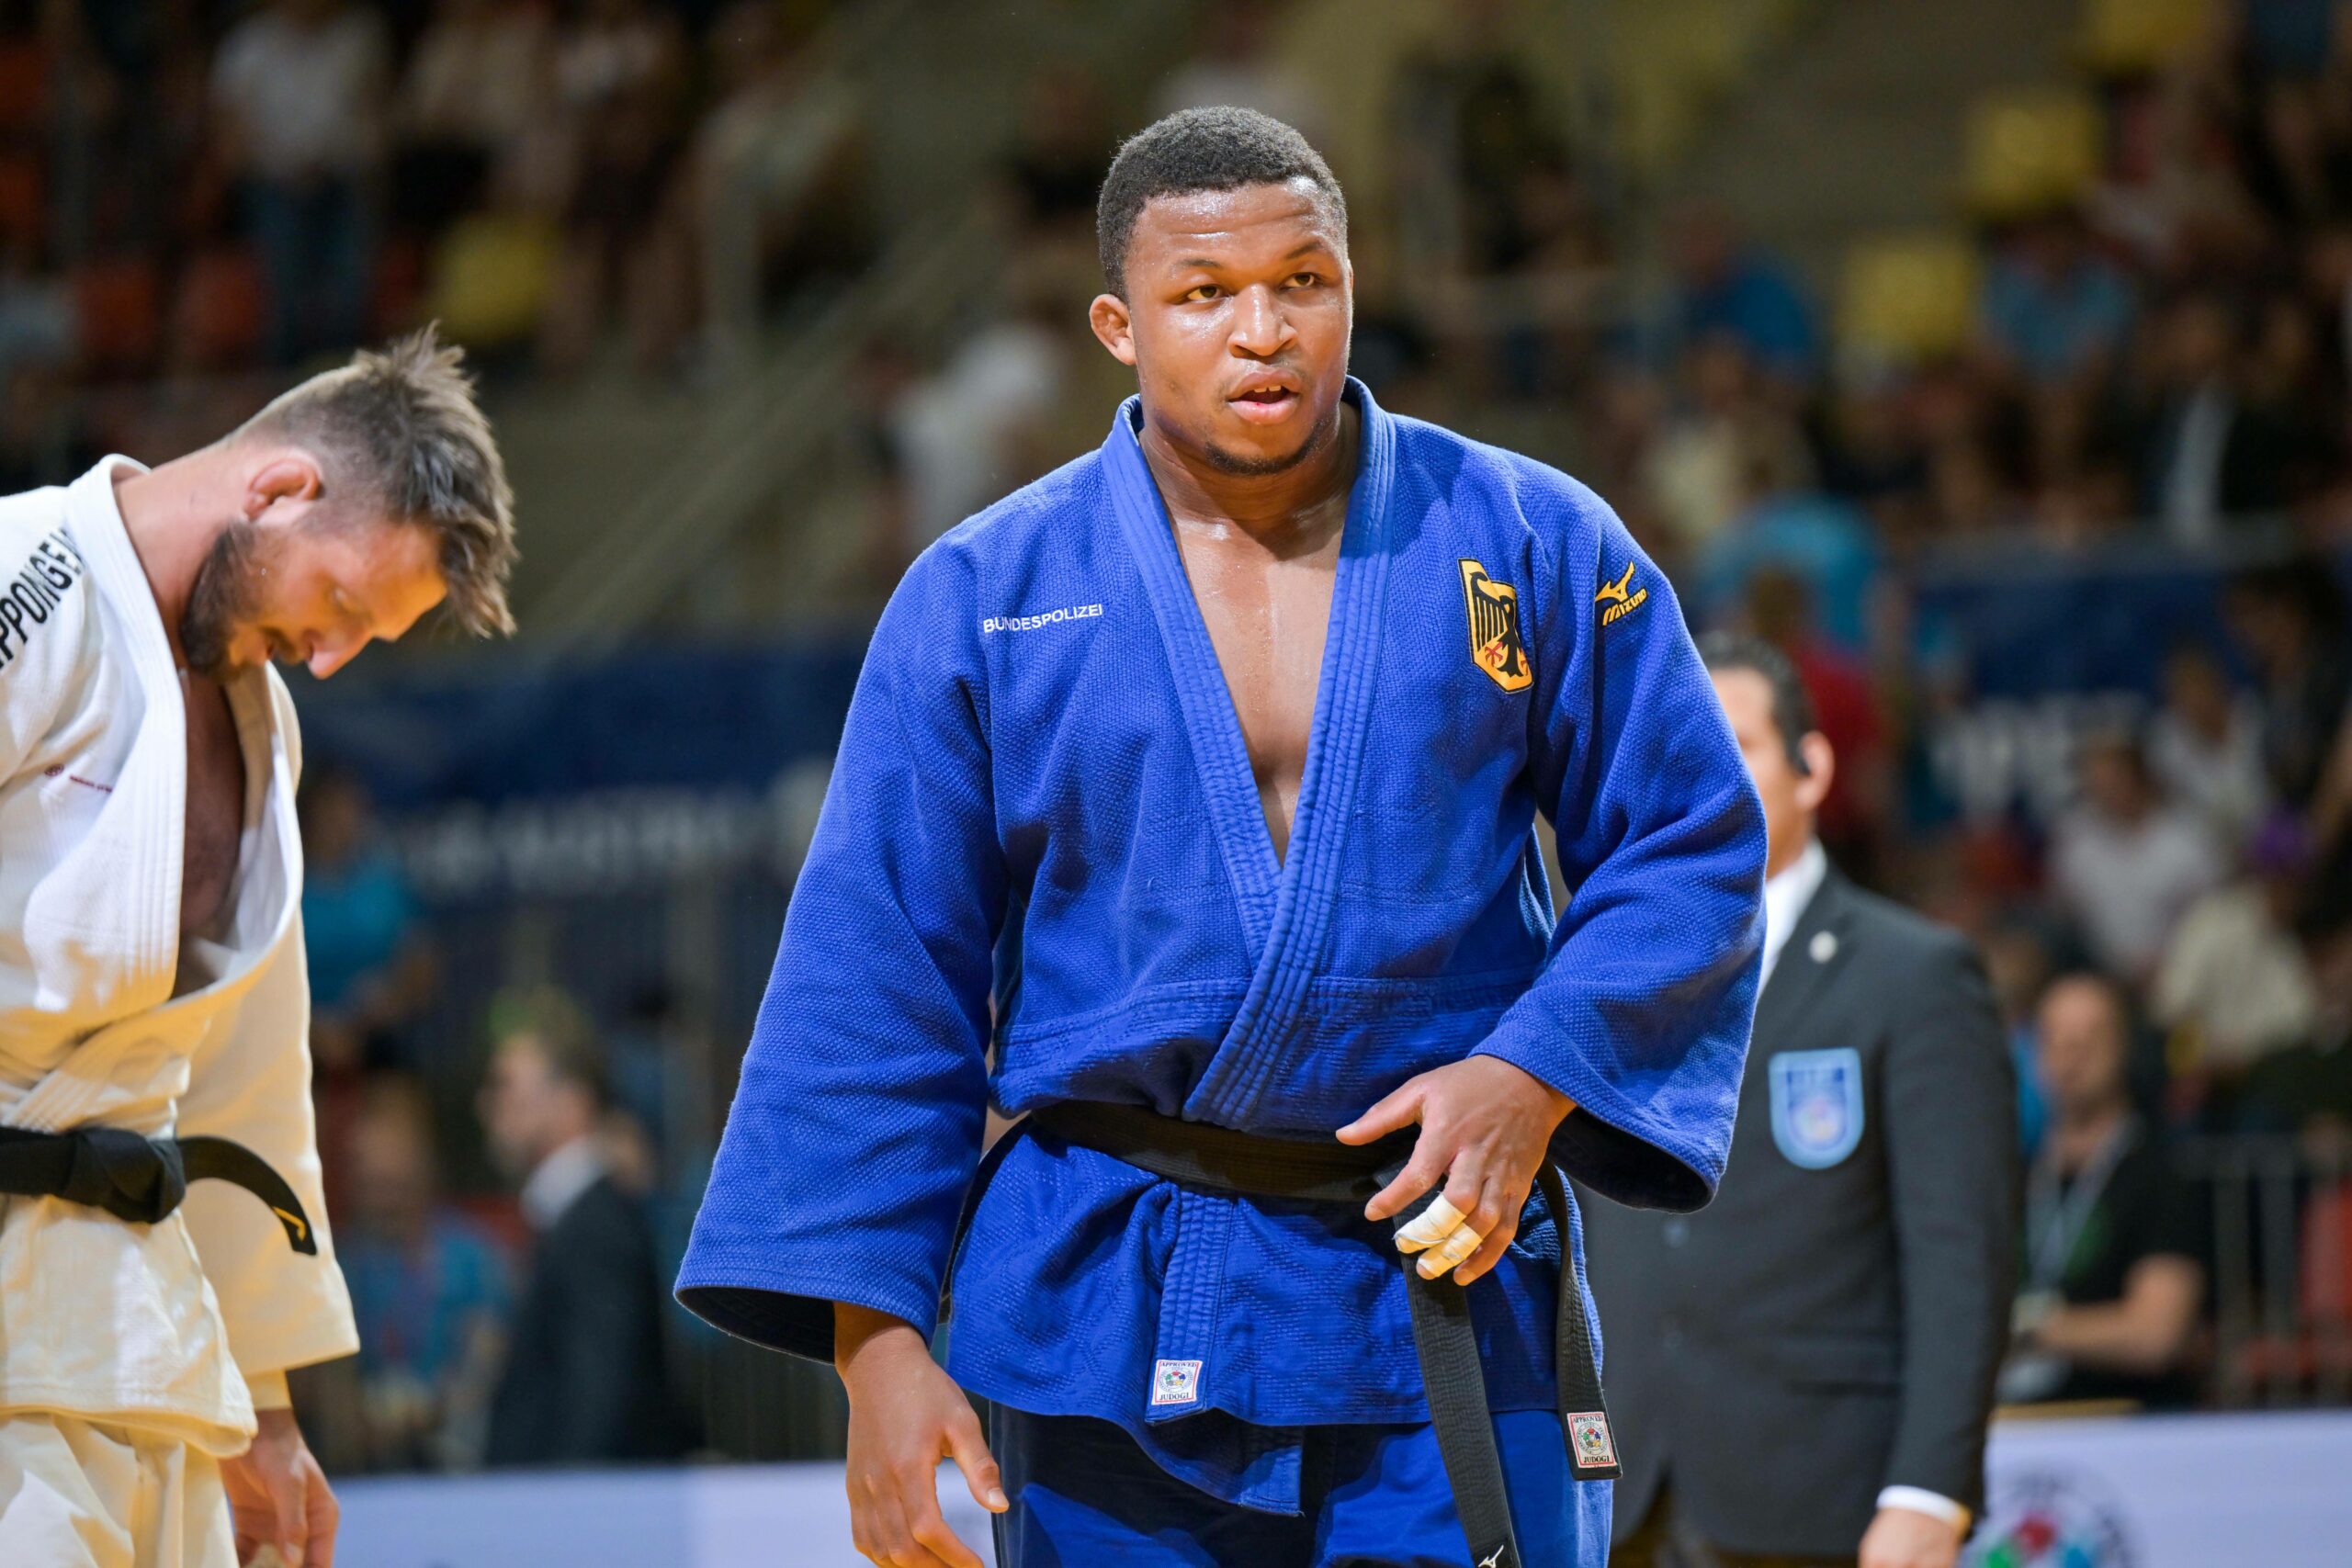 Losseni Koné im blauen Judo-Anzug, den Adler auf der Brust.